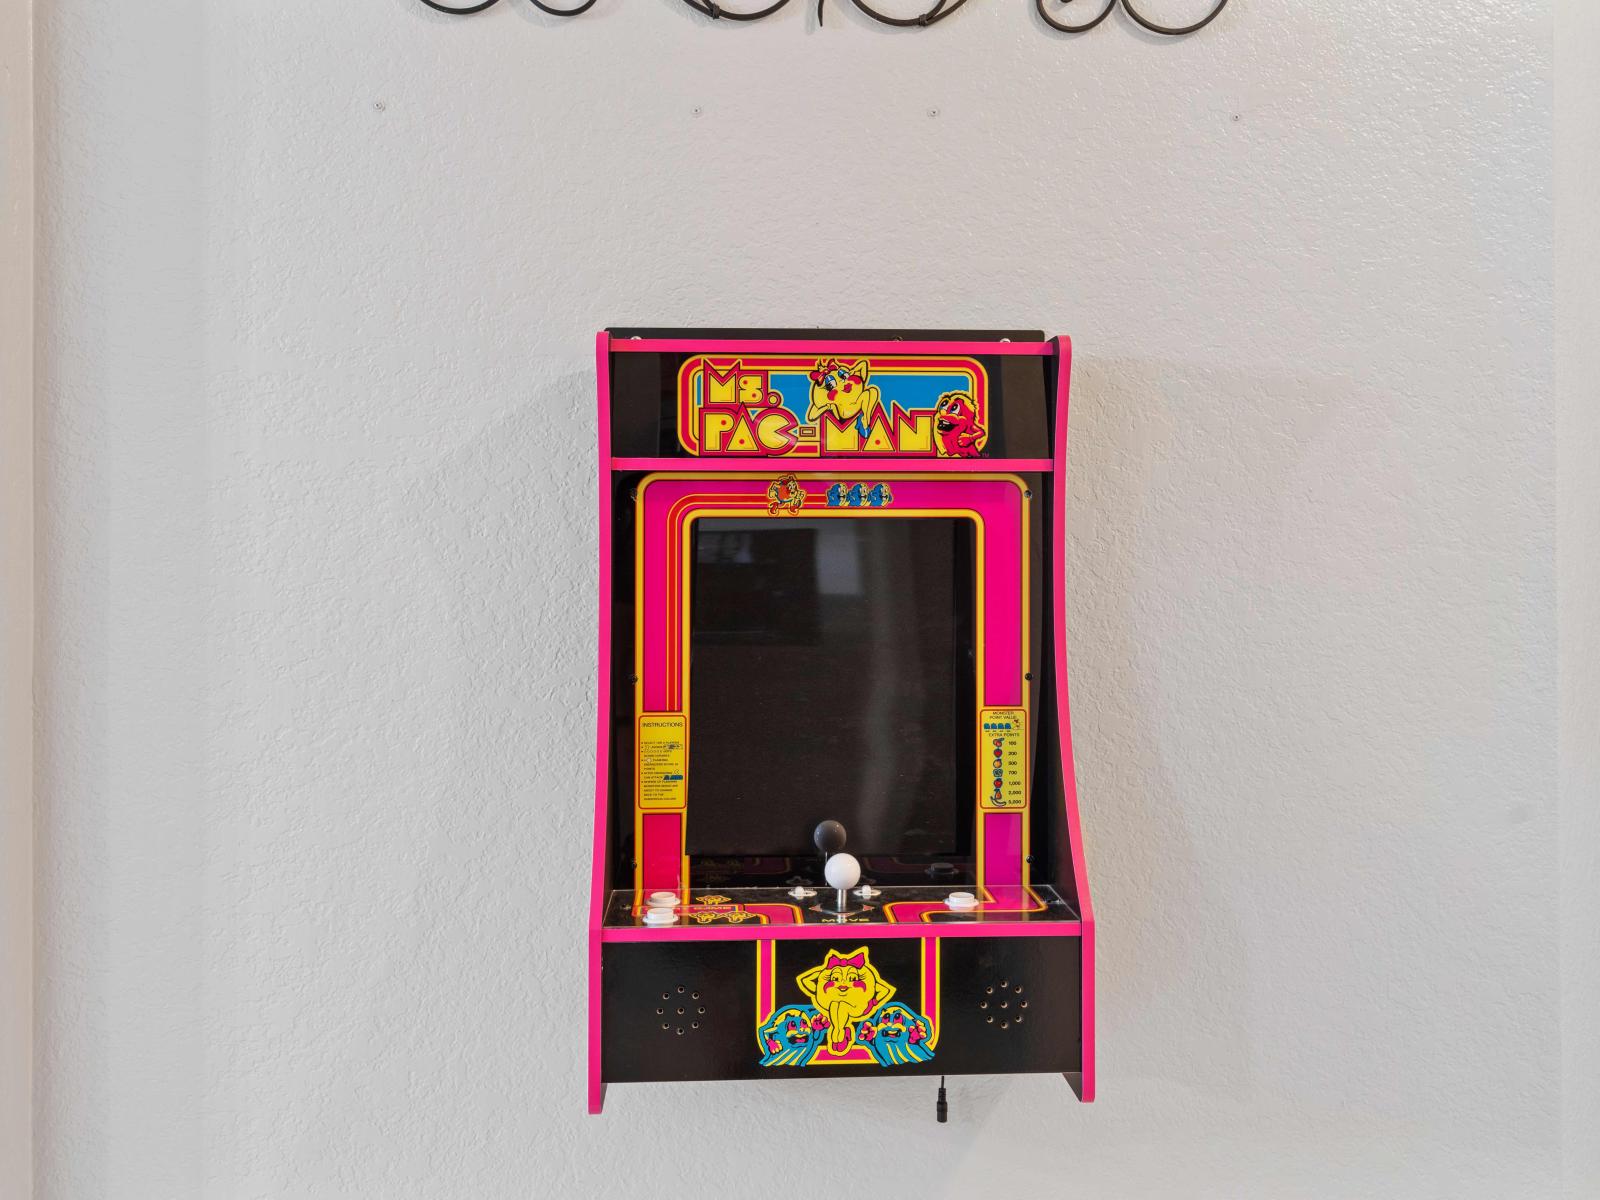 Ms Pac-Man arcade game